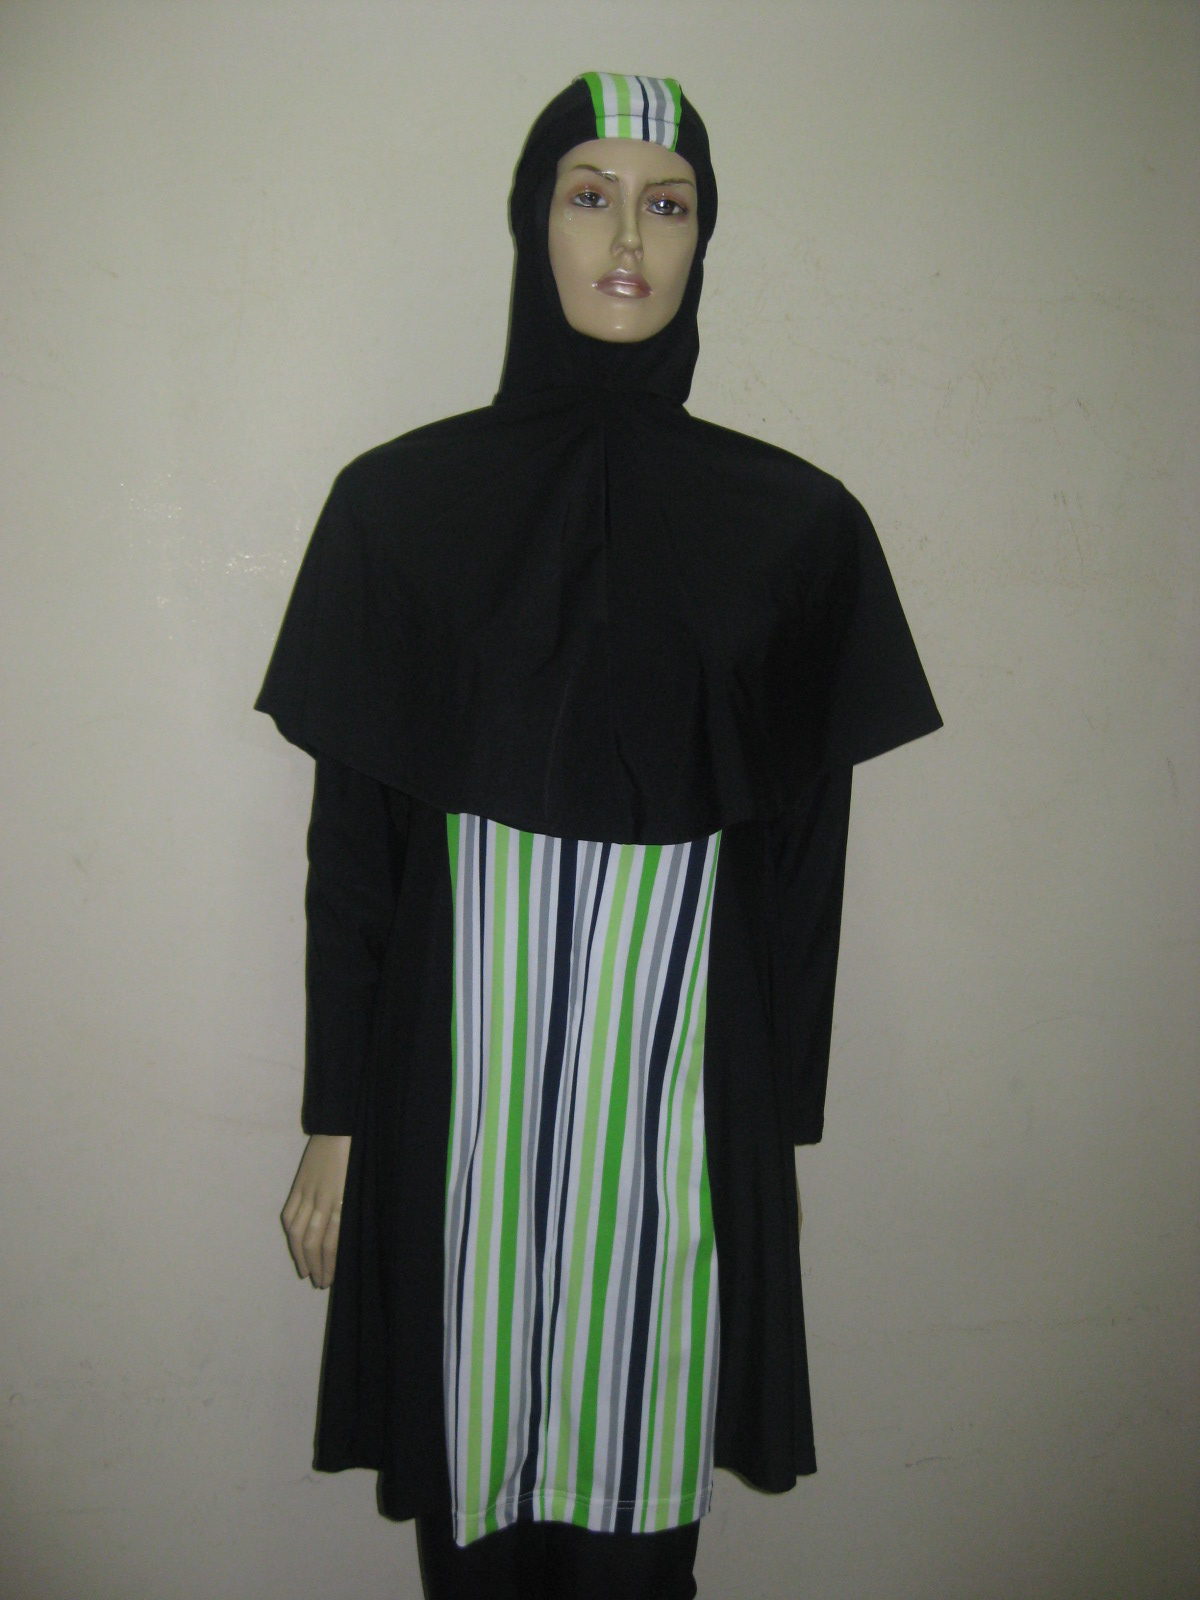  Baju  Renang  untuk Muslimah Baju  renang  muslimah dewasa 